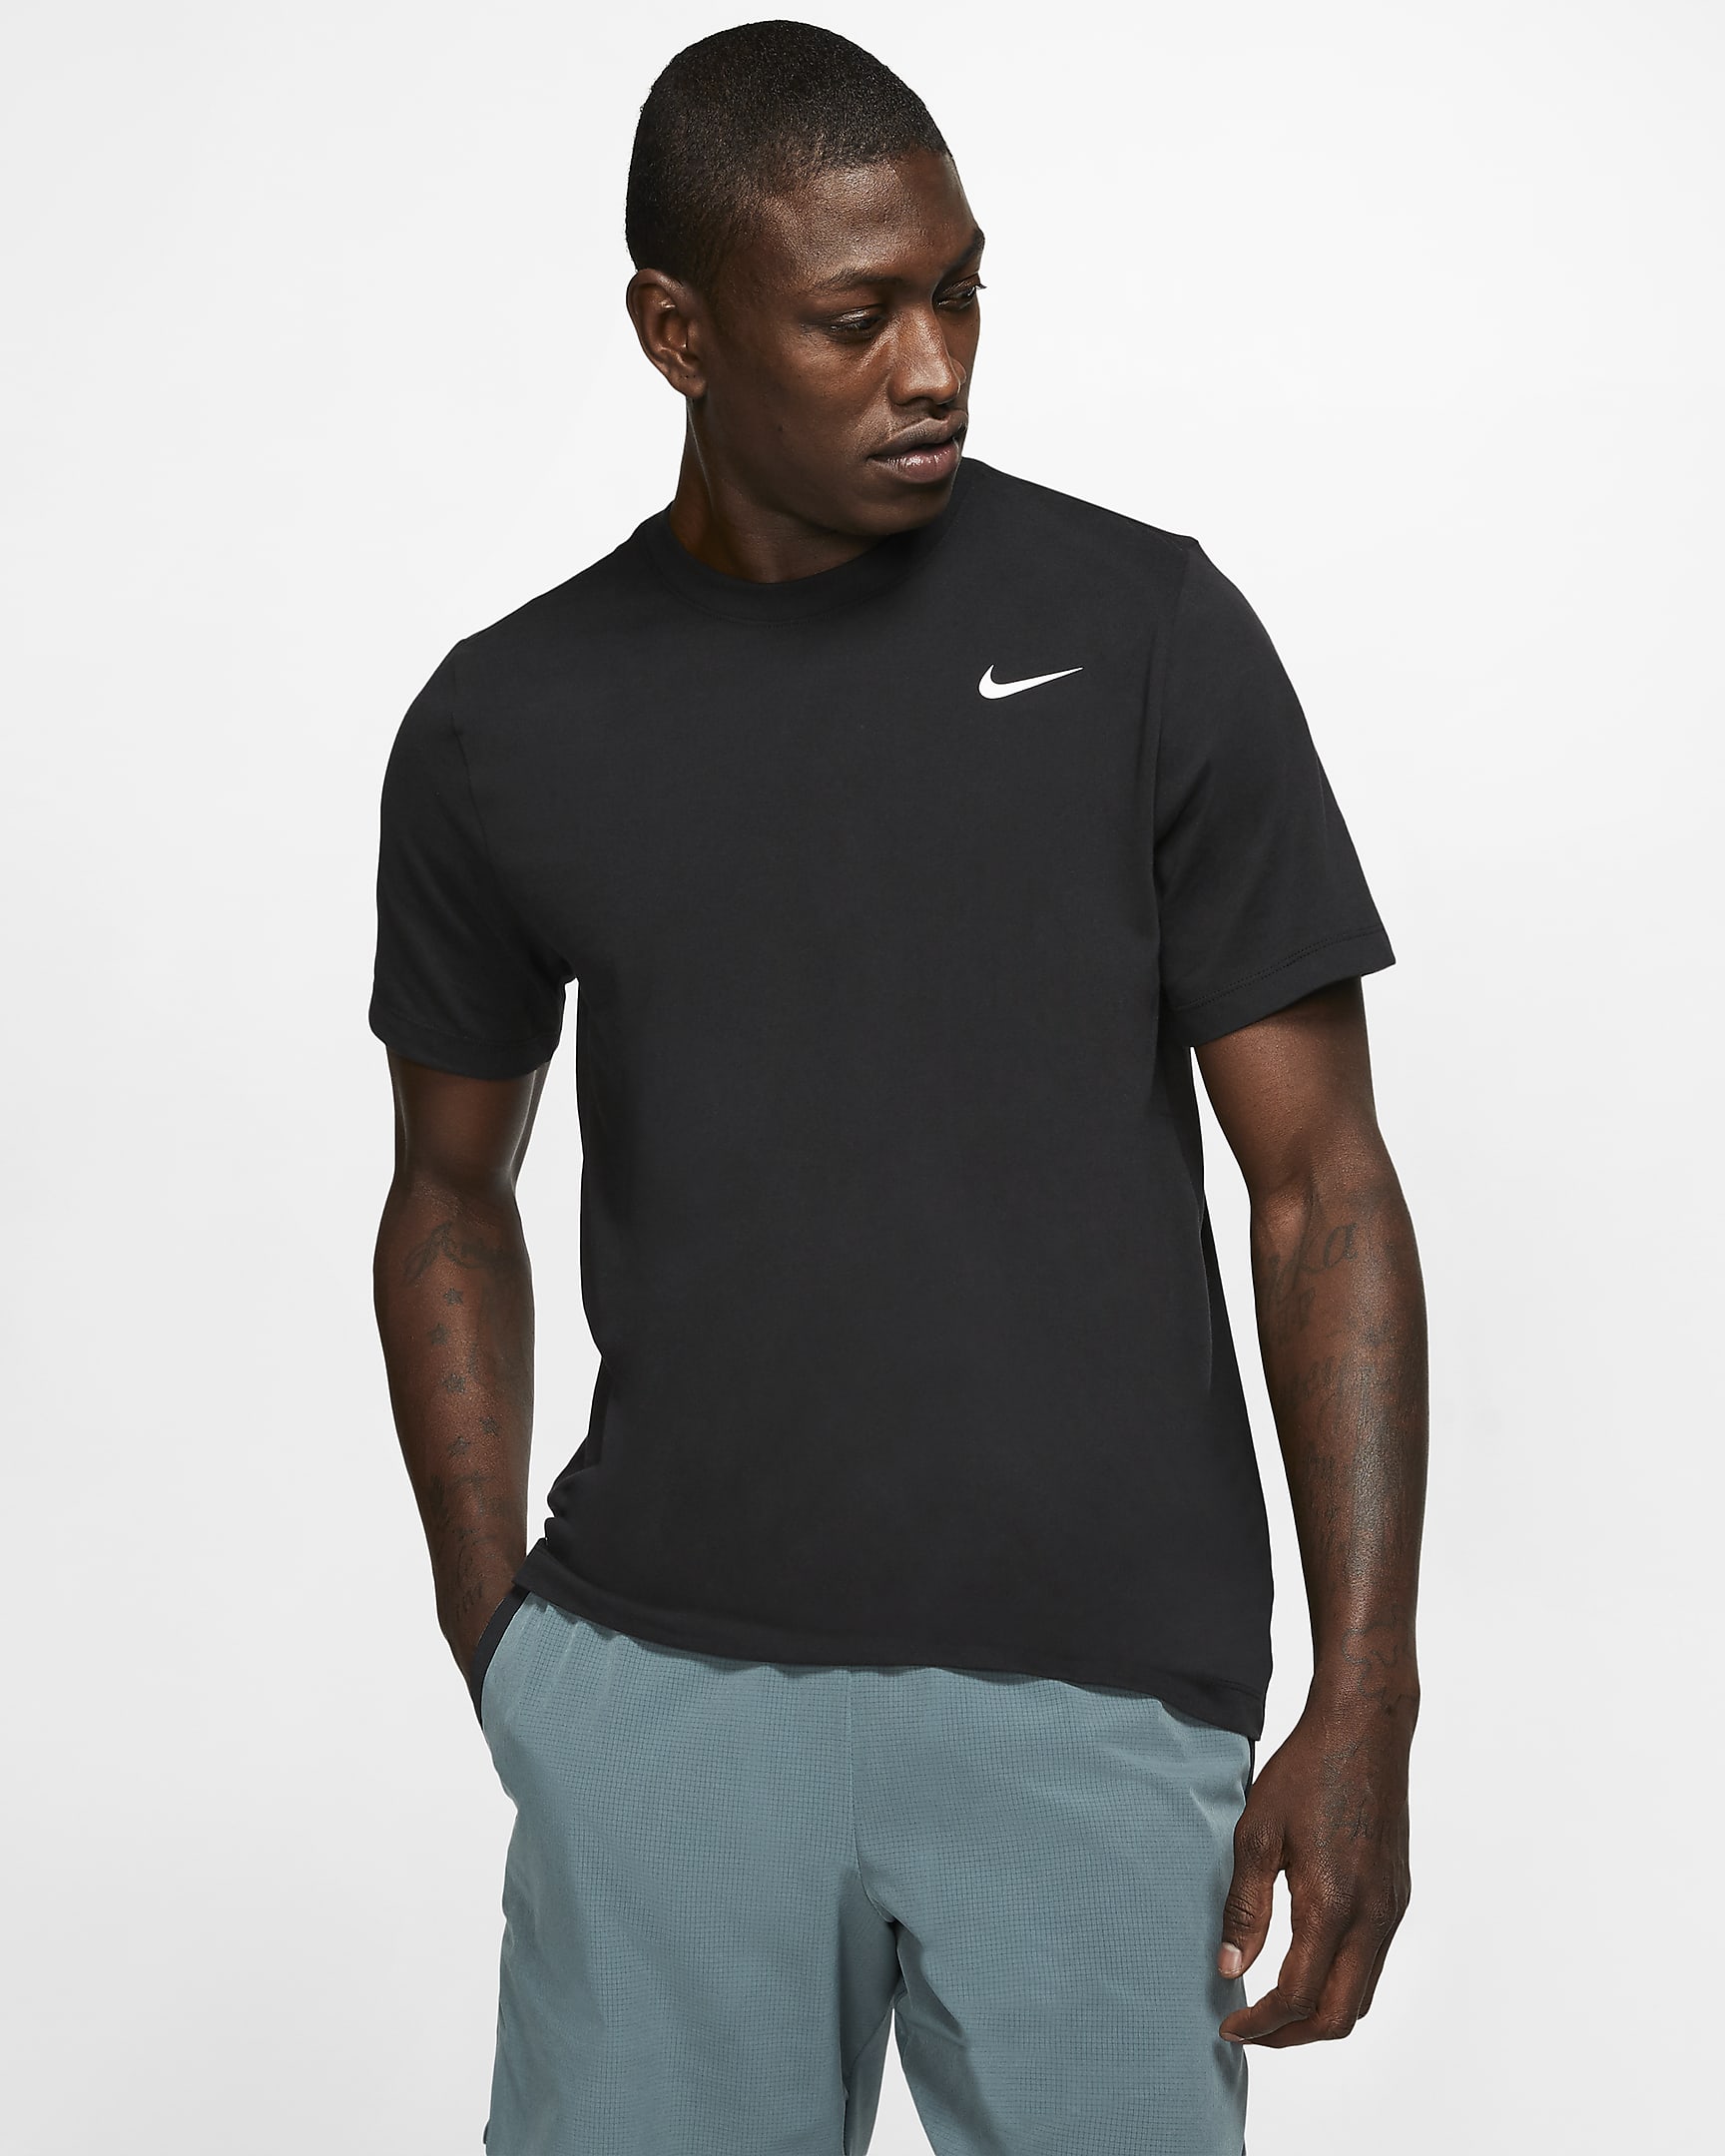 Nike Dri-FIT Men's Fitness T-Shirt - Black/White